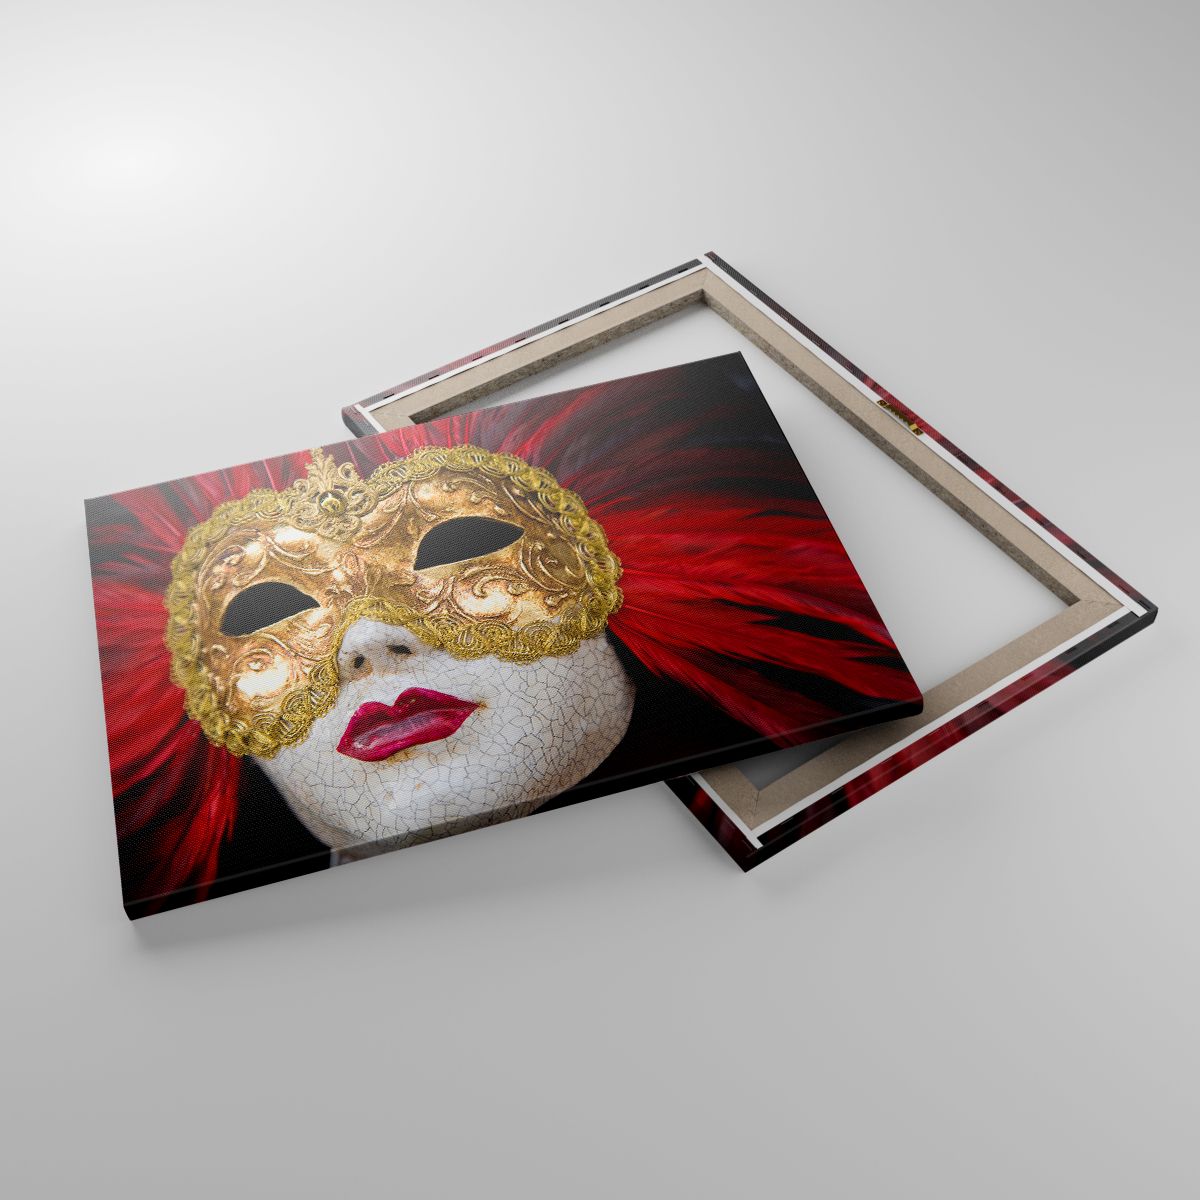 Leinwandbild Venezianische Maske, Leinwandbild Kunst, Leinwandbild Venedig, Leinwandbild Karneval, Leinwandbild Italien